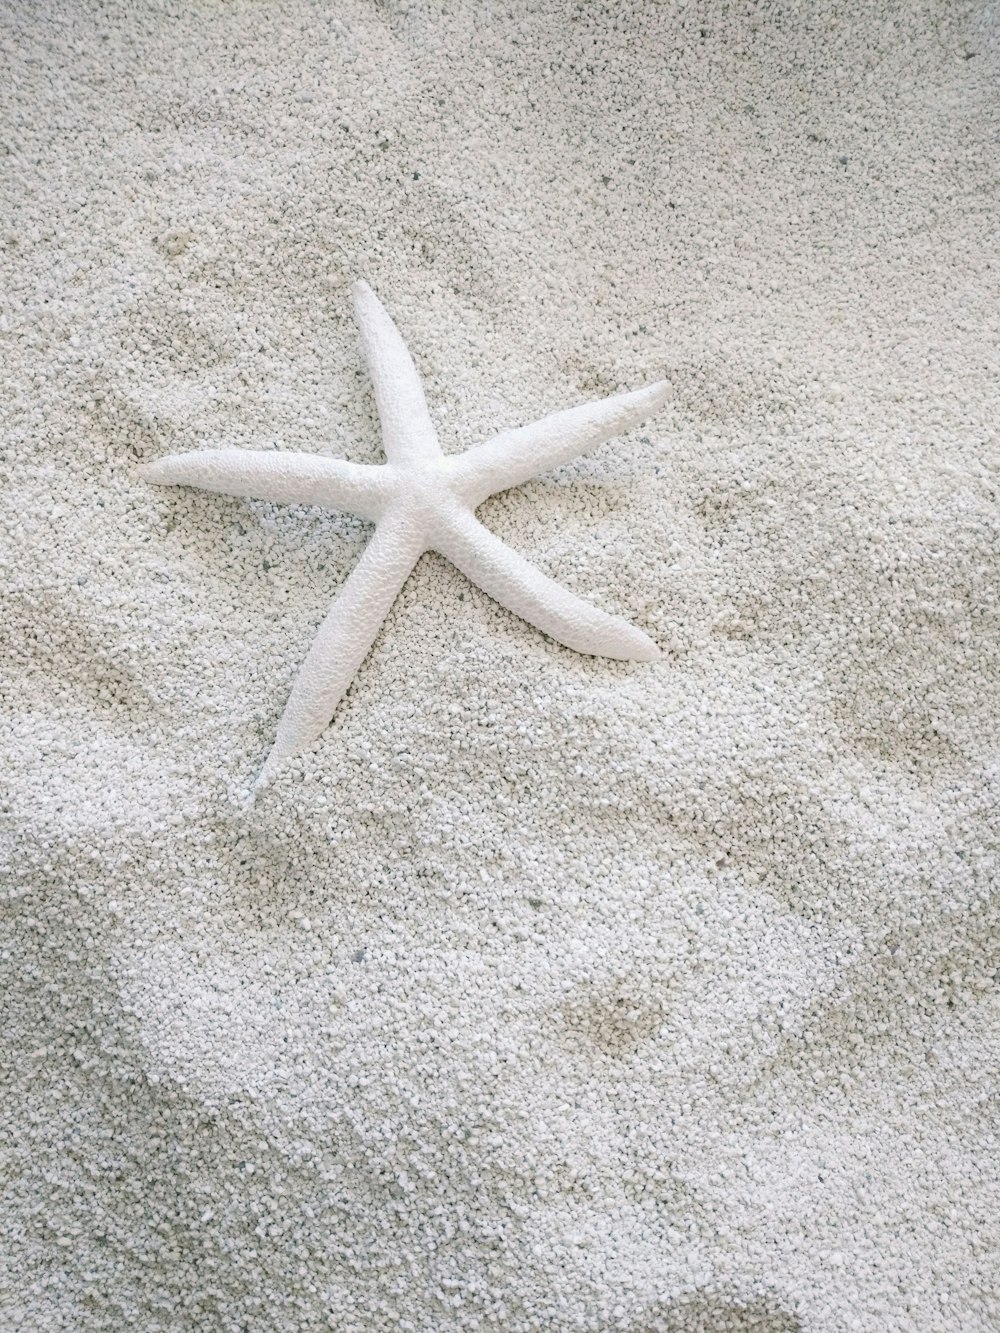 stella marina bianca su sabbia bianca